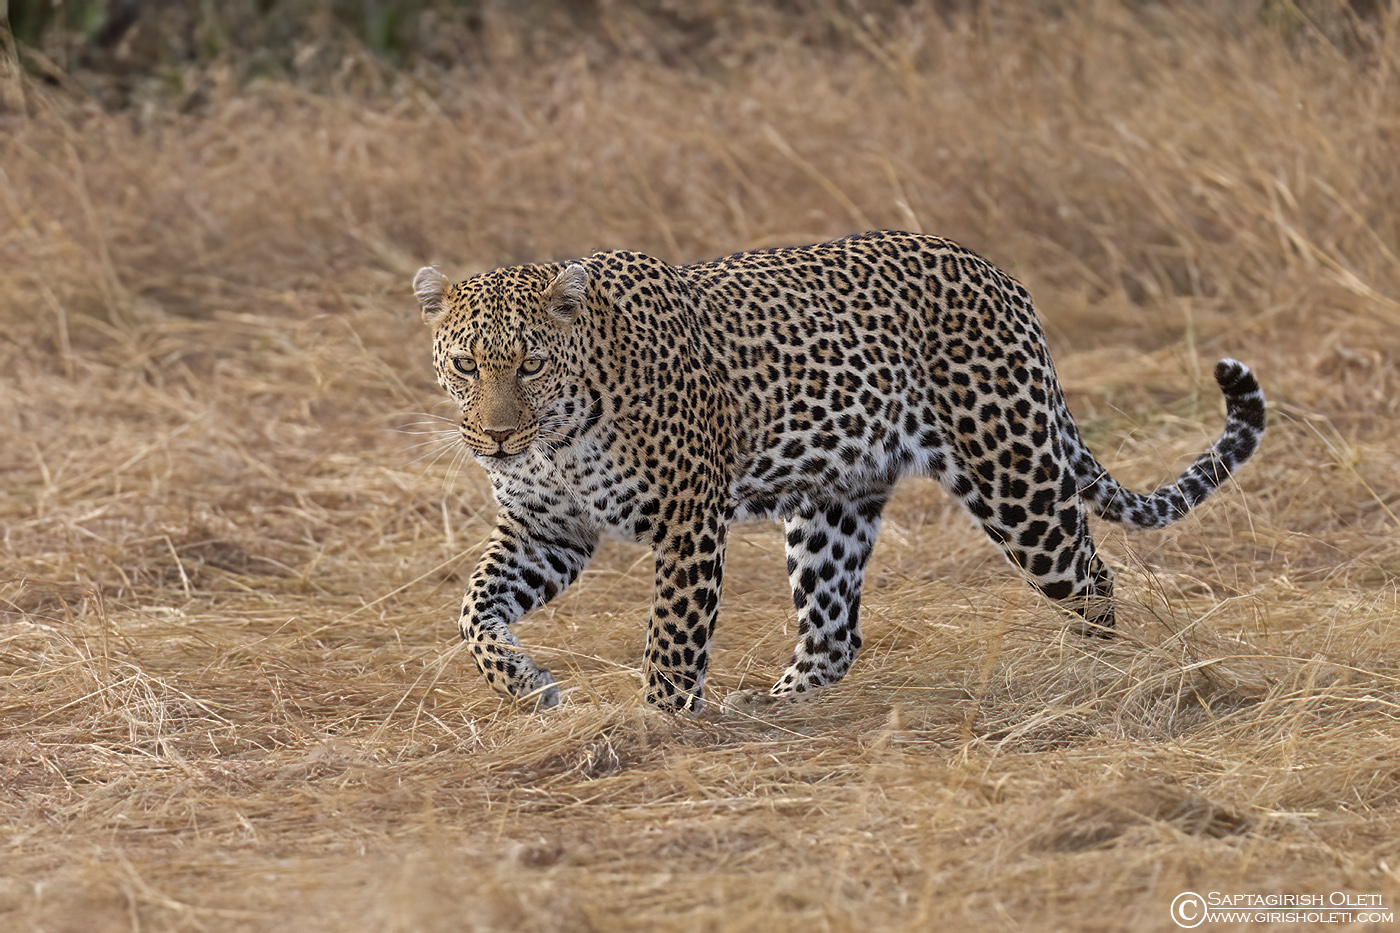 Leopard photographed at Masai Mara, Kenya